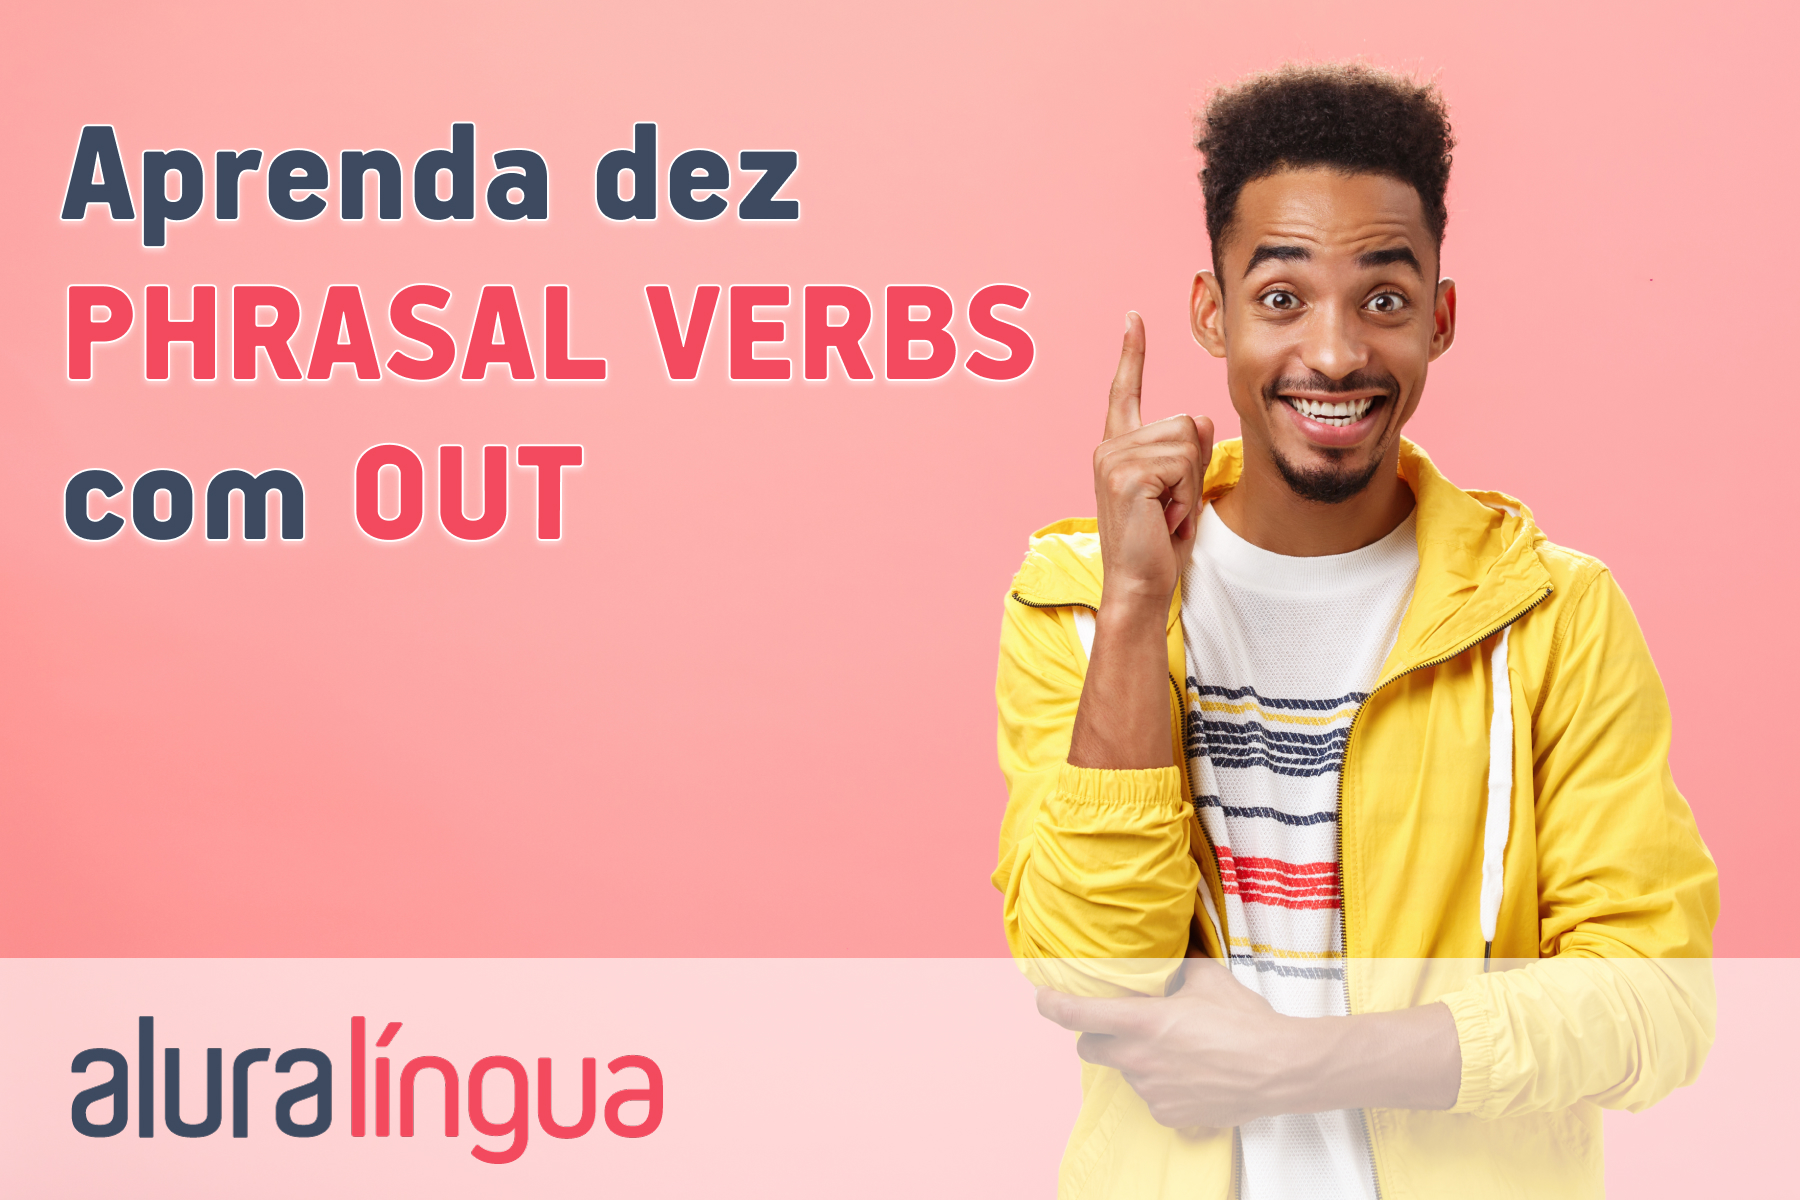 Aprenda dez phrasal verbs com out #inset